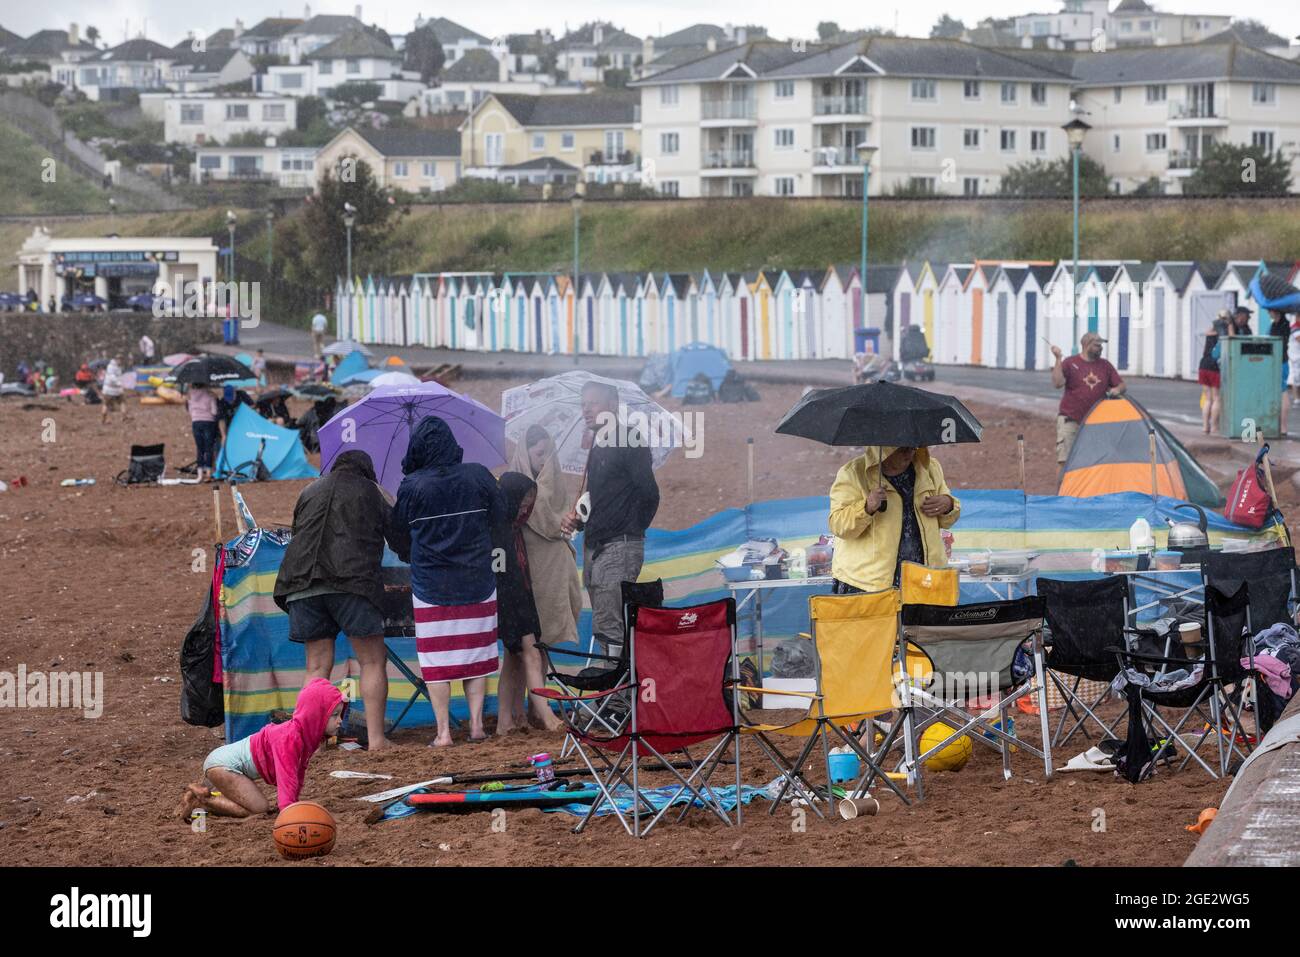 Les vacanciers brave les éléments à Goodrington North Beach à Paignton, Devon, frappé par des averses orageuses obligeant certains touristes à courir pour couvrir, Royaume-Uni. Banque D'Images